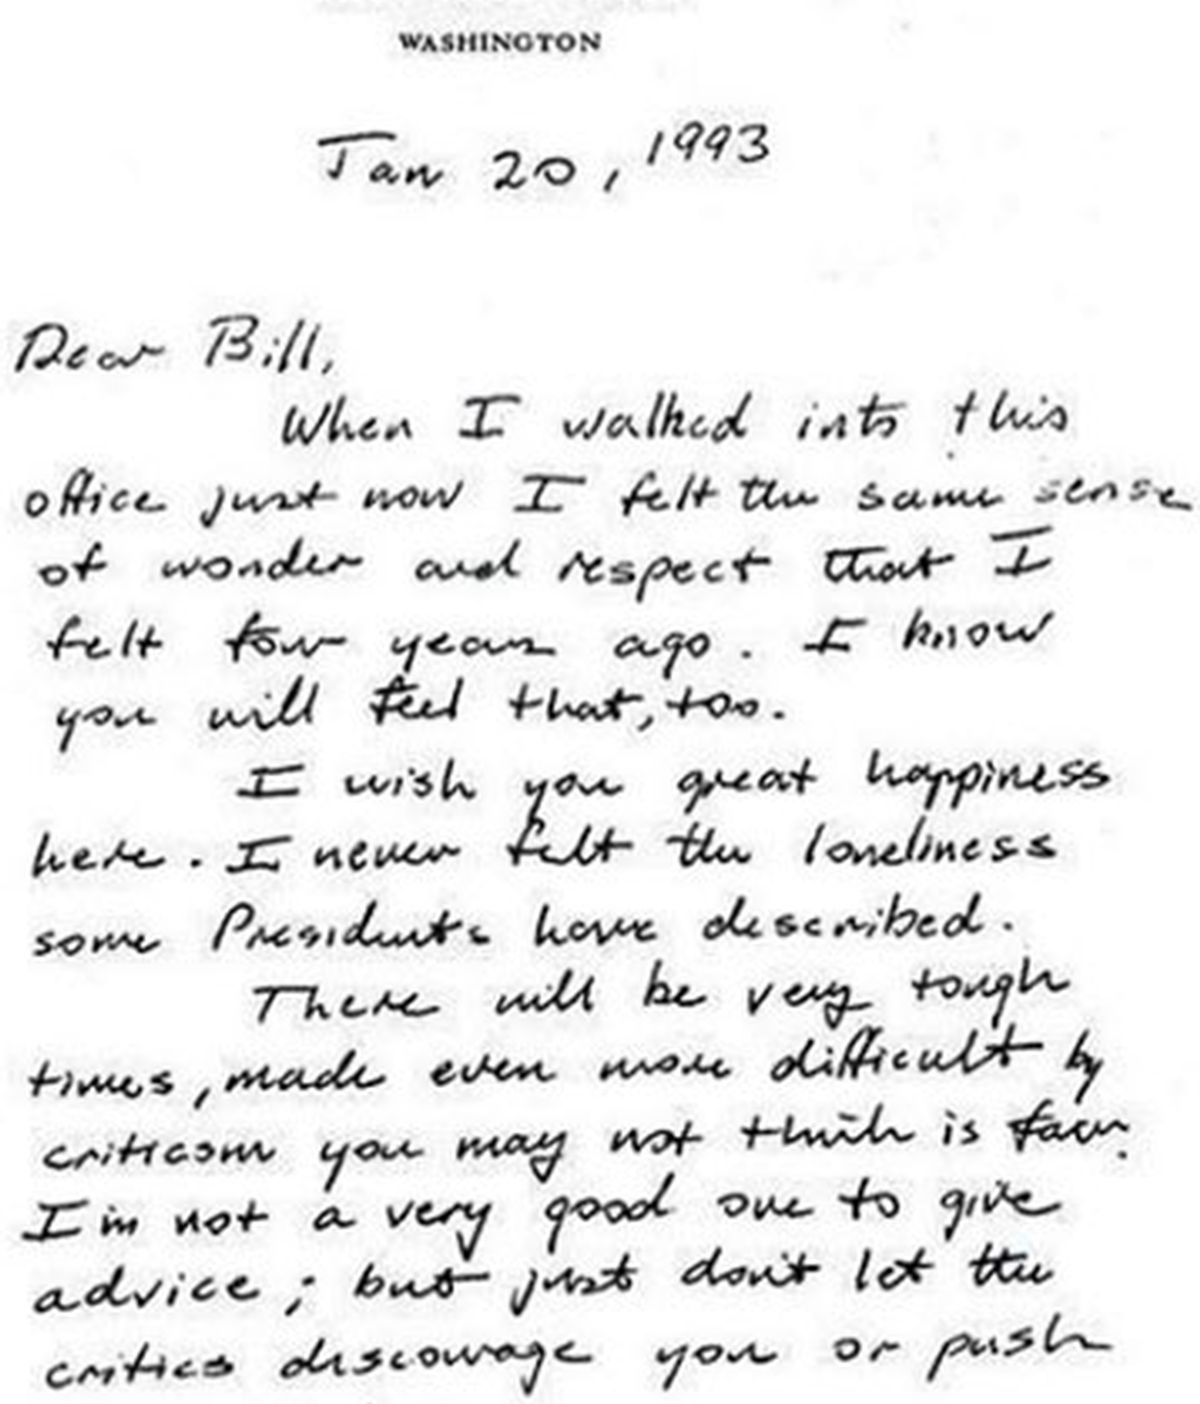 La antigua carta de bienvenida de Bush padre a Bill Clinton que triunfa en las redes